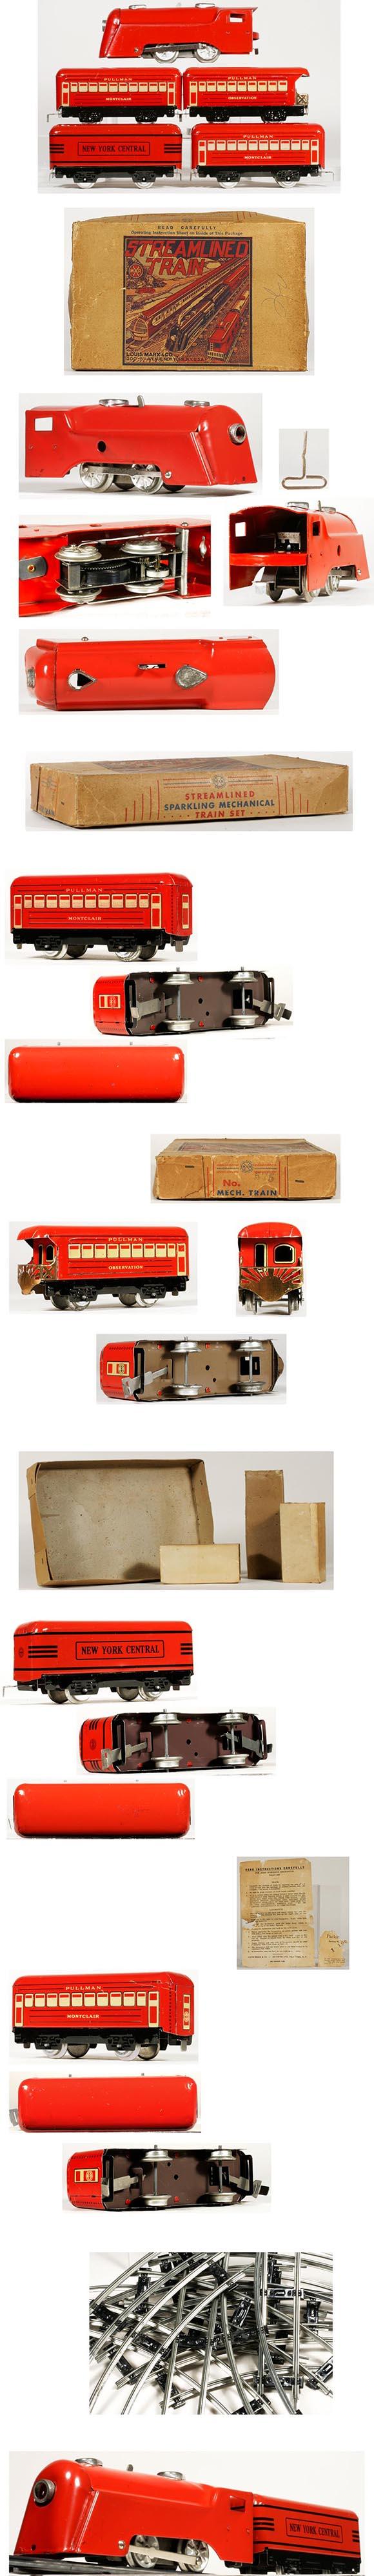 1950 Marx,  Commodore Vanderbilt Train Set in Original Box